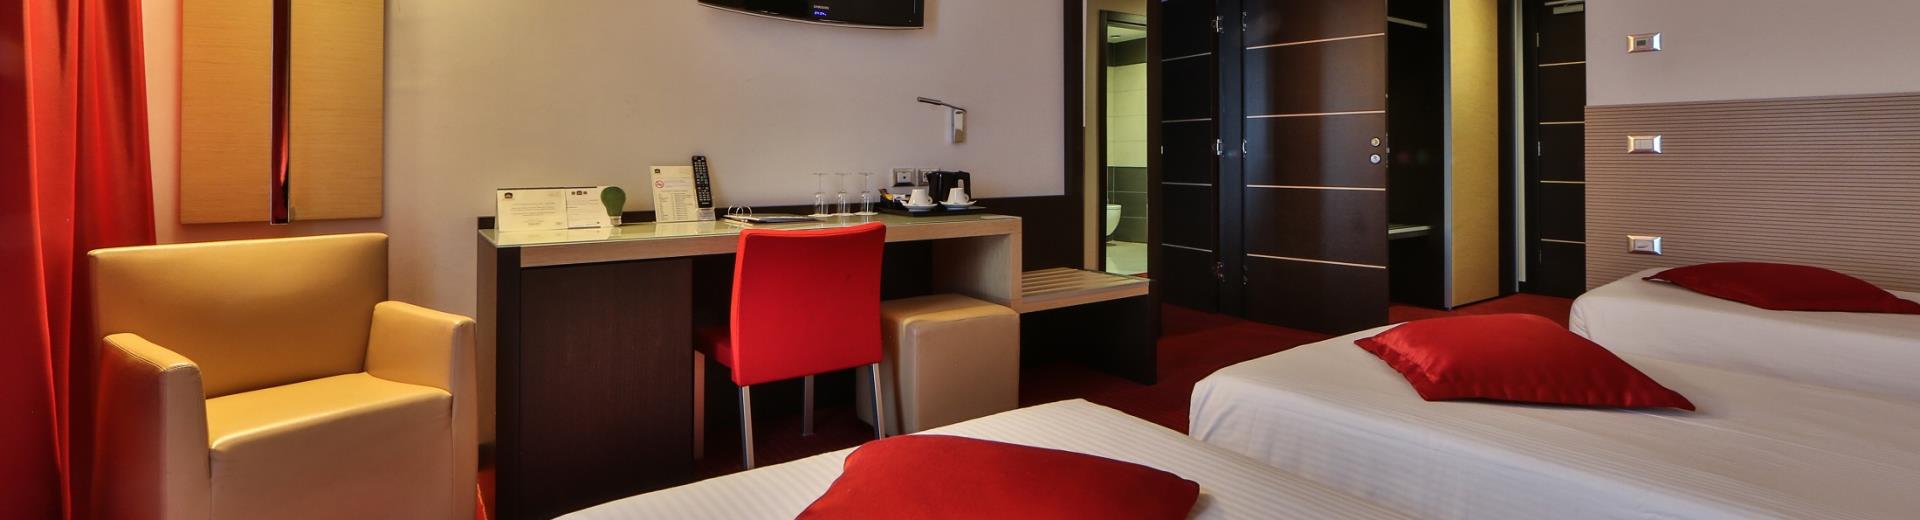 Scopri le camere del Best Western Plus Hotel Galileo a Padova